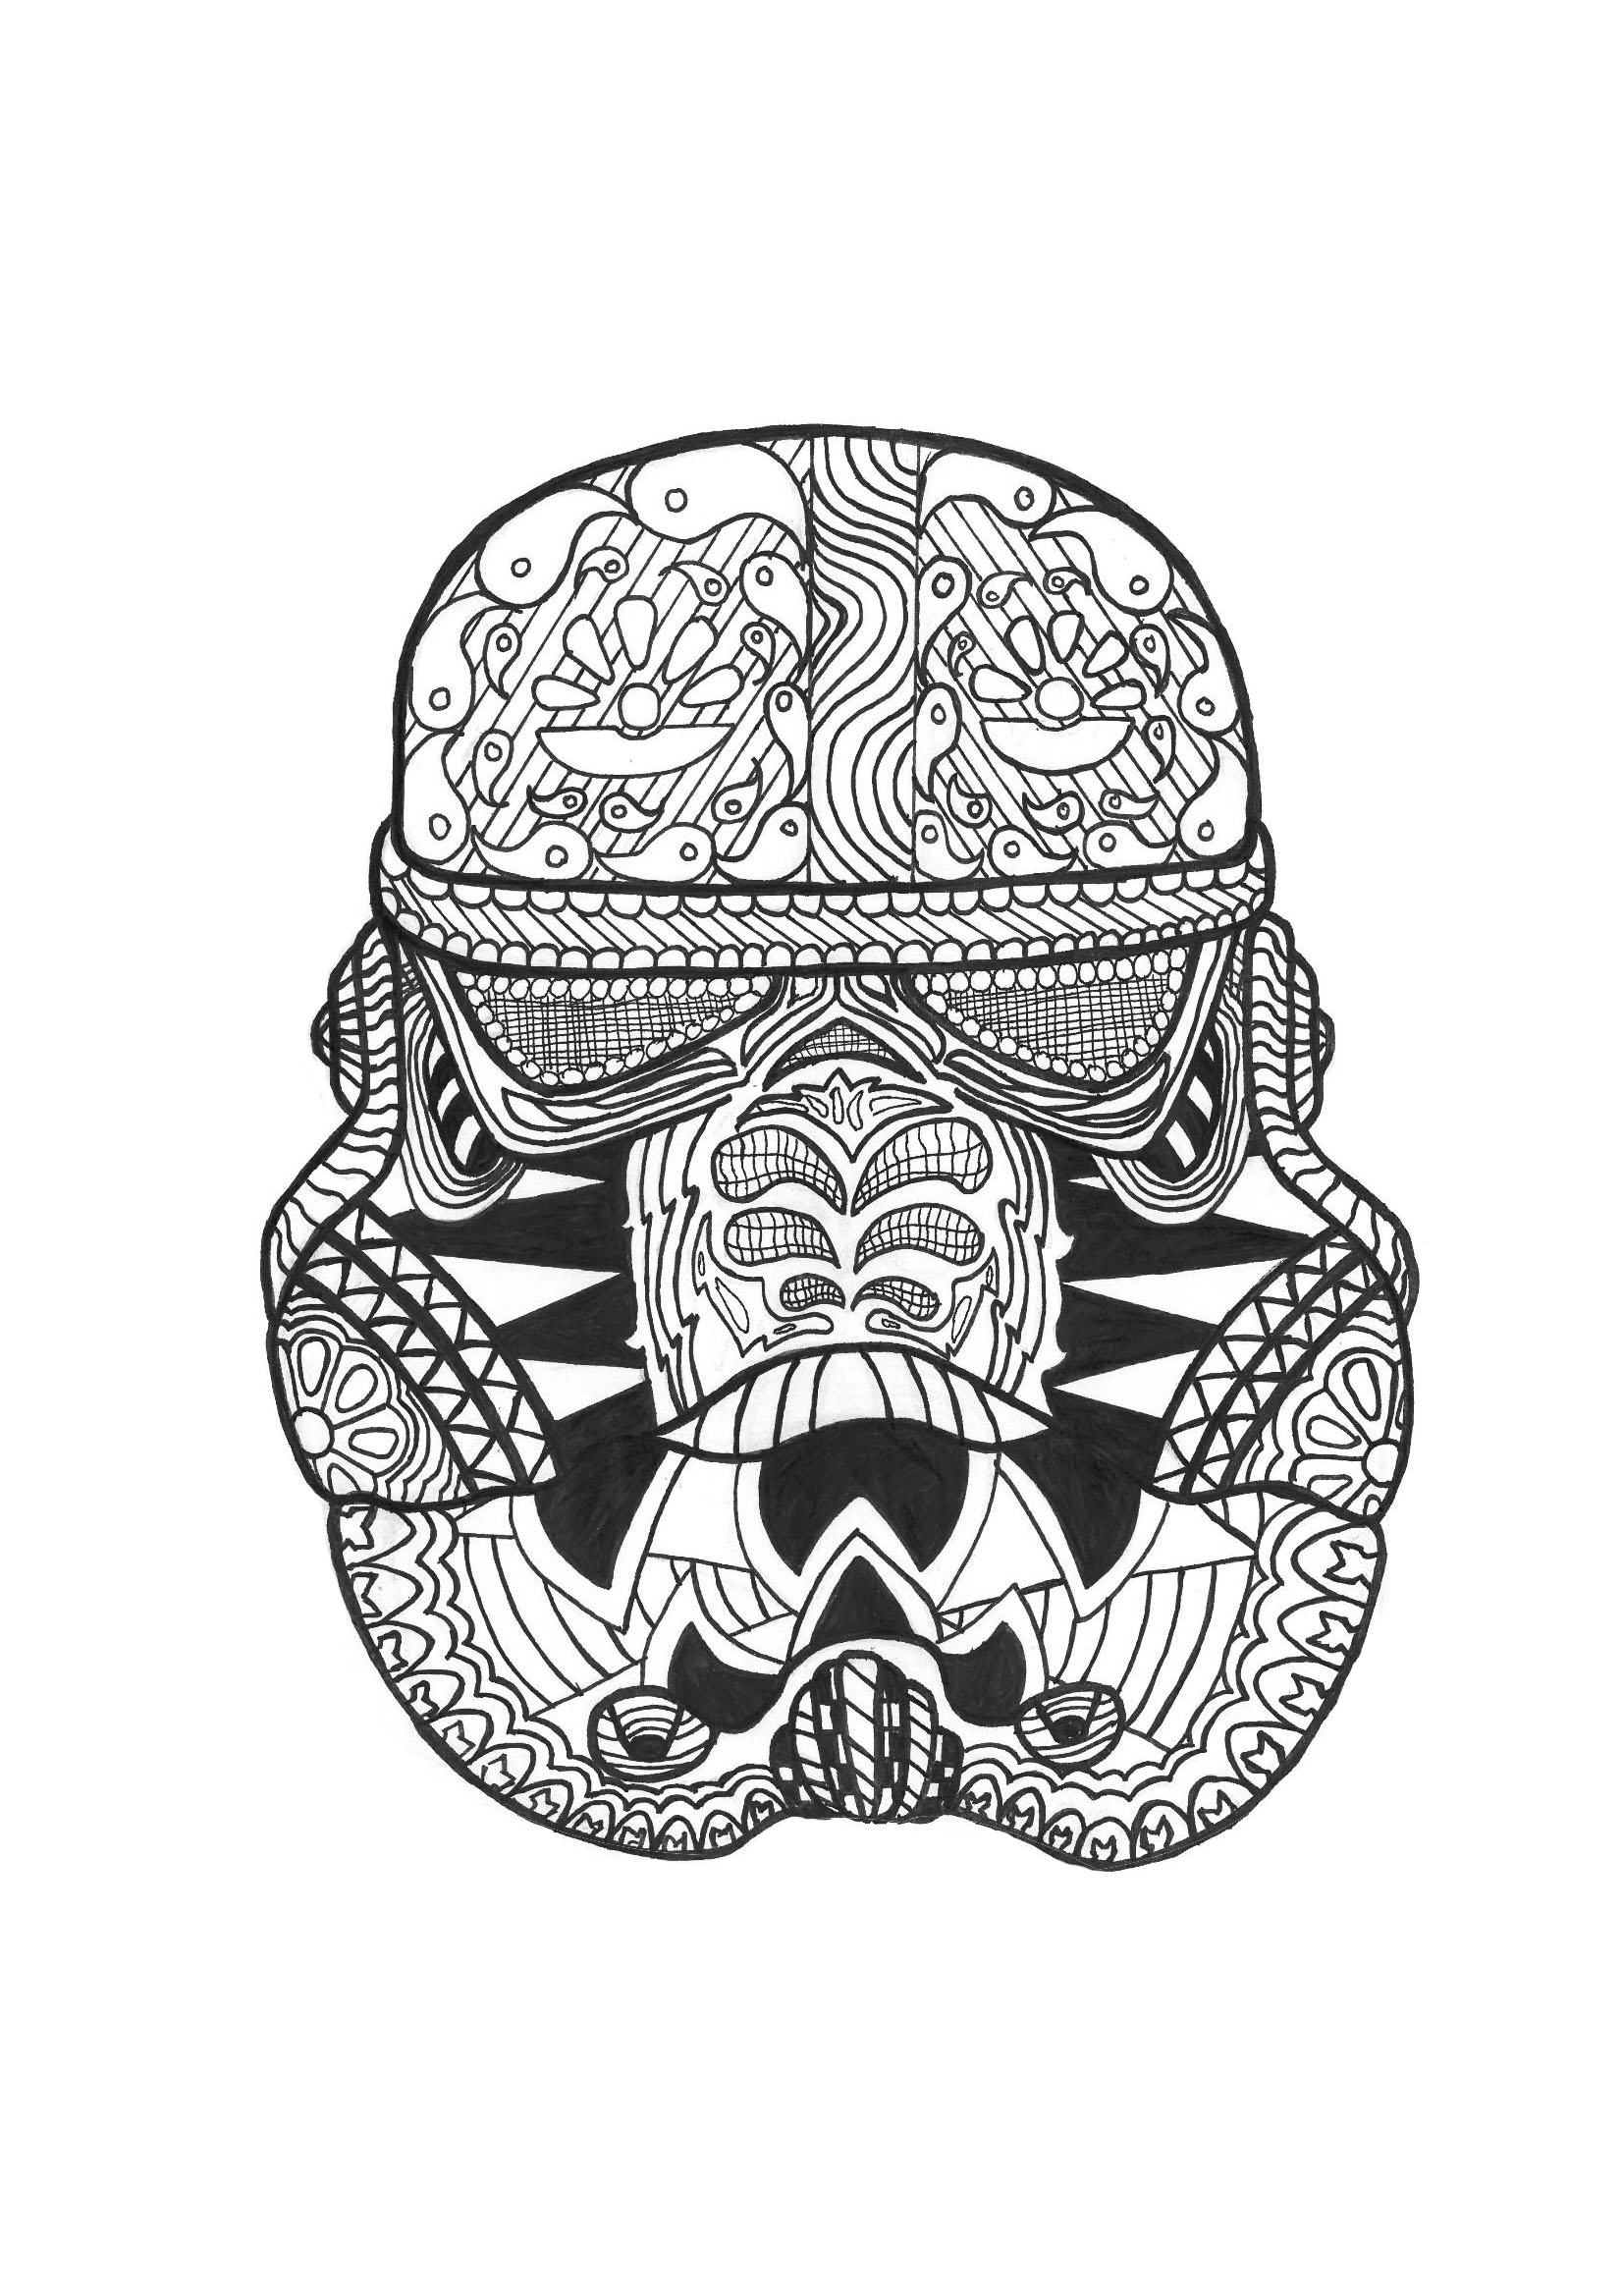 Ausmalbild eines Stormtrooper-Helms (aus Star Wars)